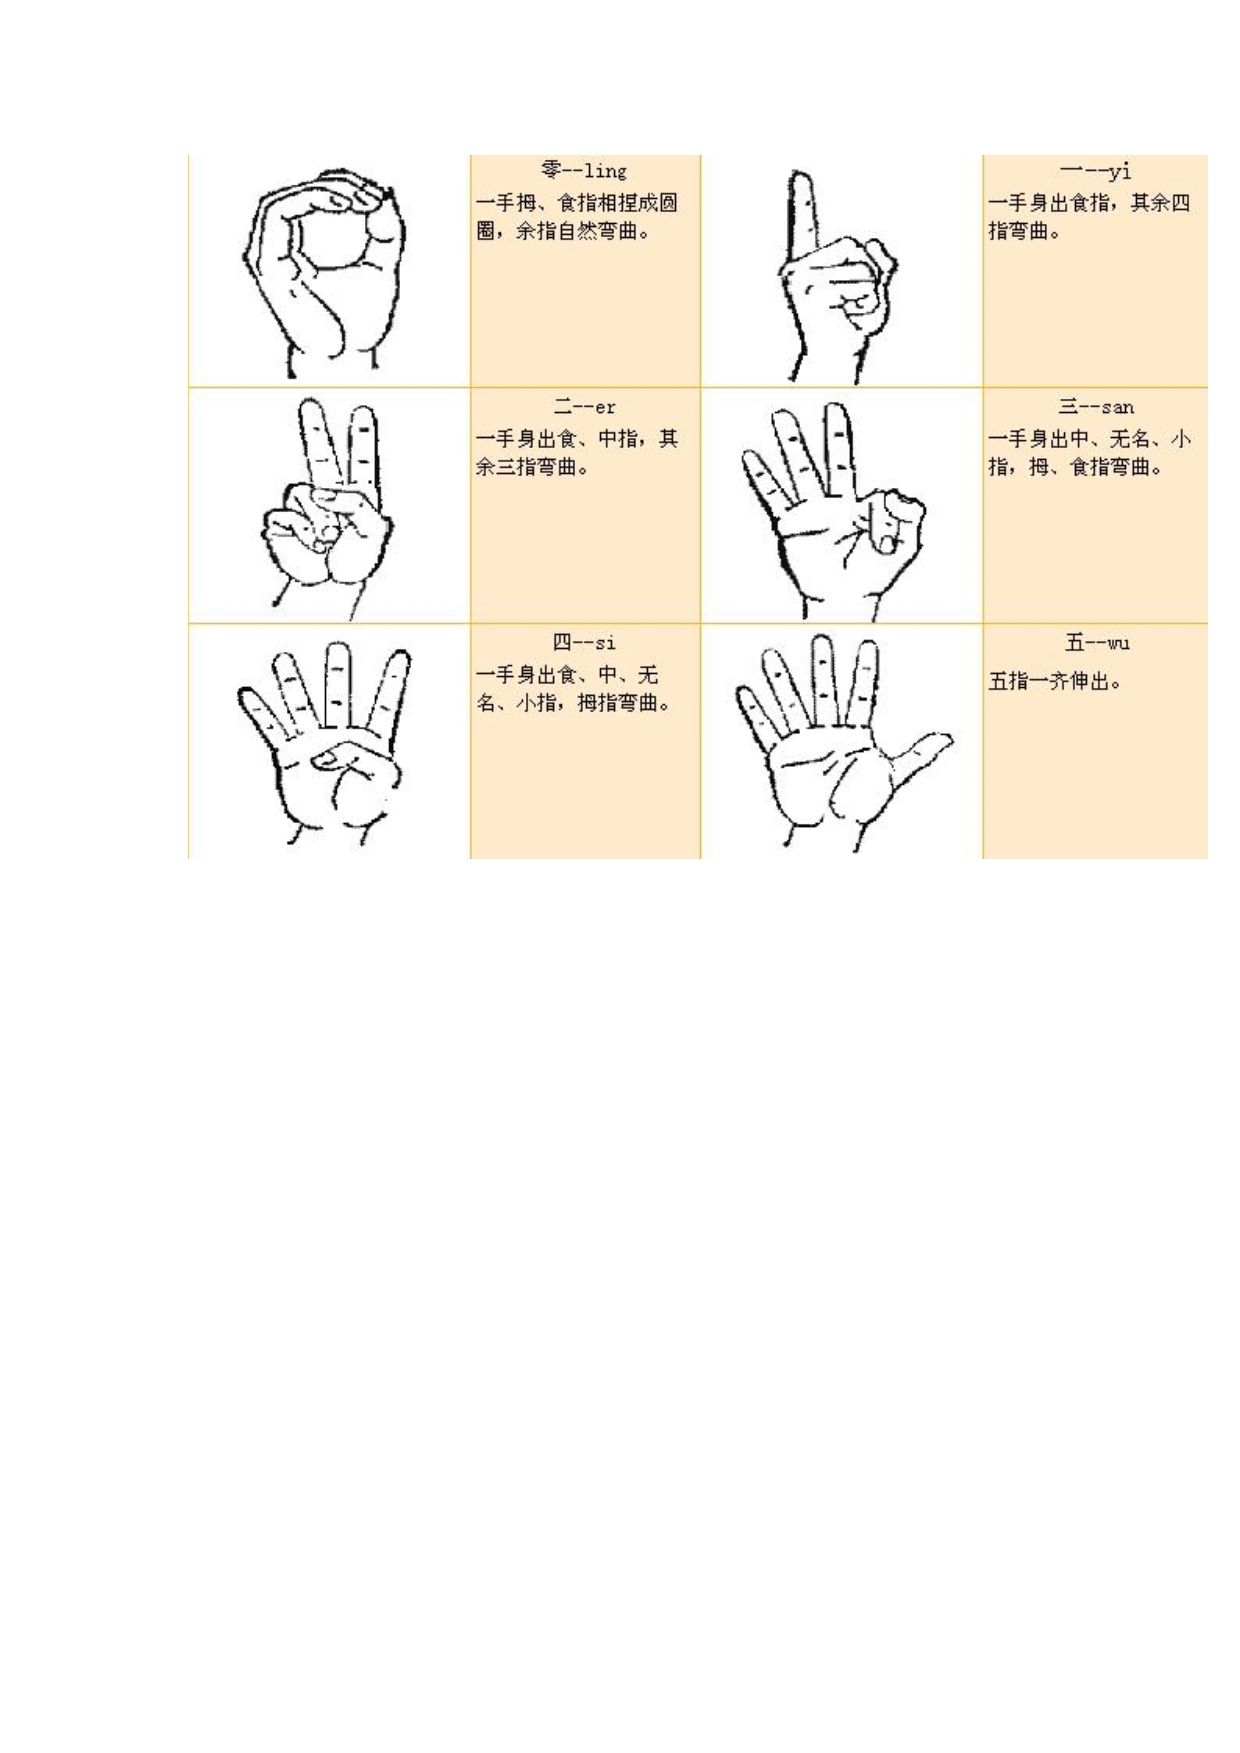 各种手势代表意义图解图片